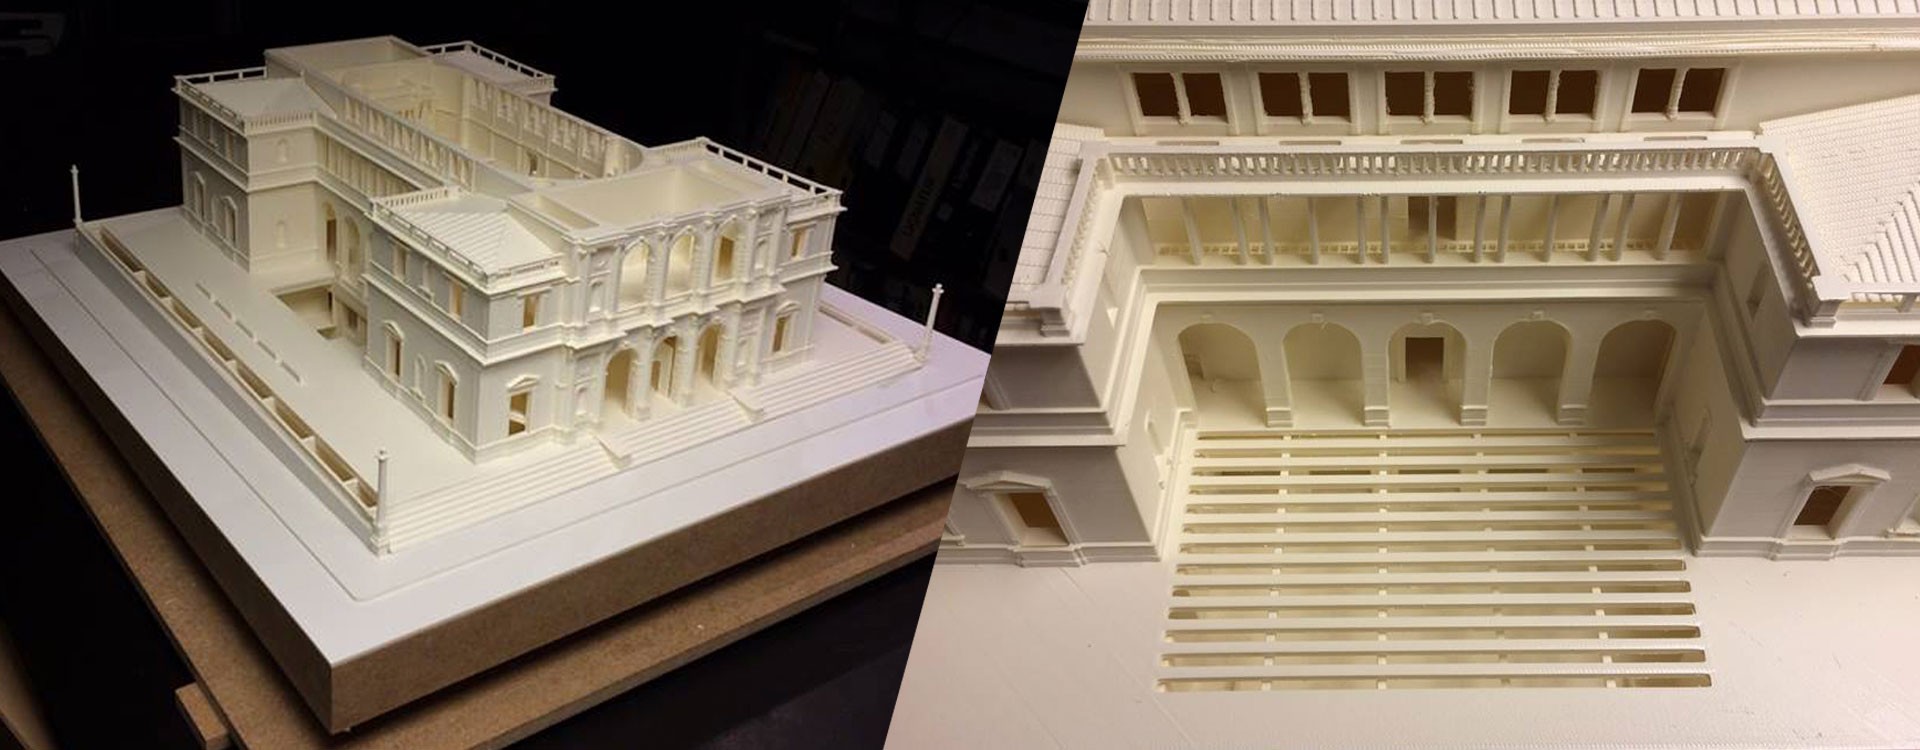 Як 3D-принтери використовуються в архітектурі?